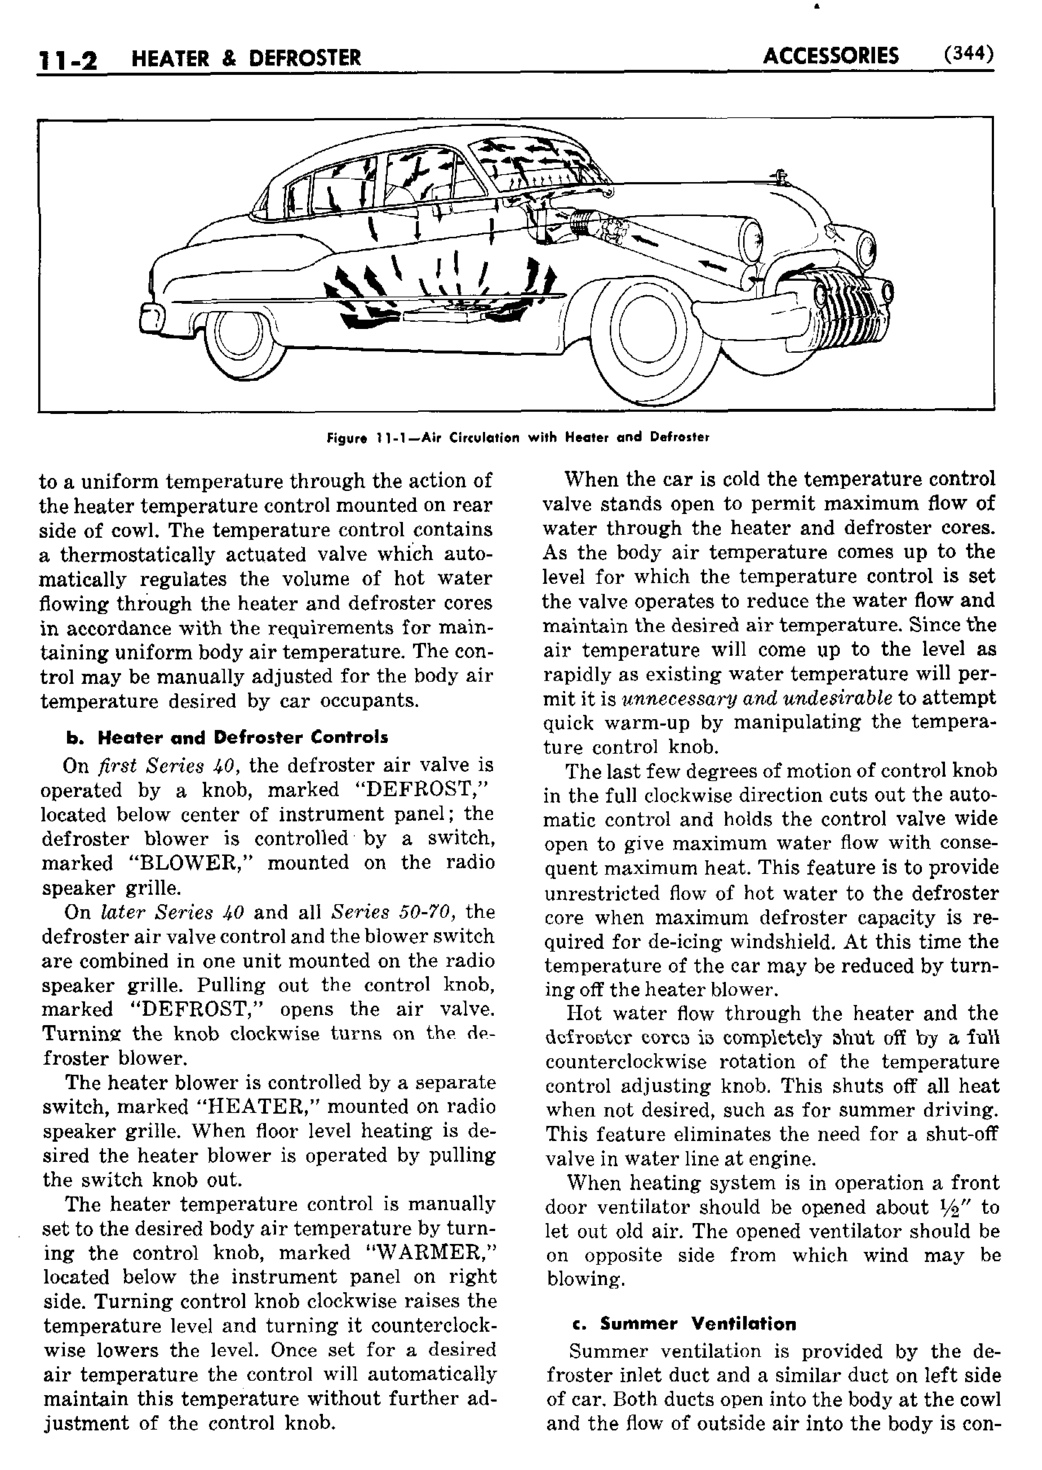 n_12 1950 Buick Shop Manual - Accessories-002-002.jpg